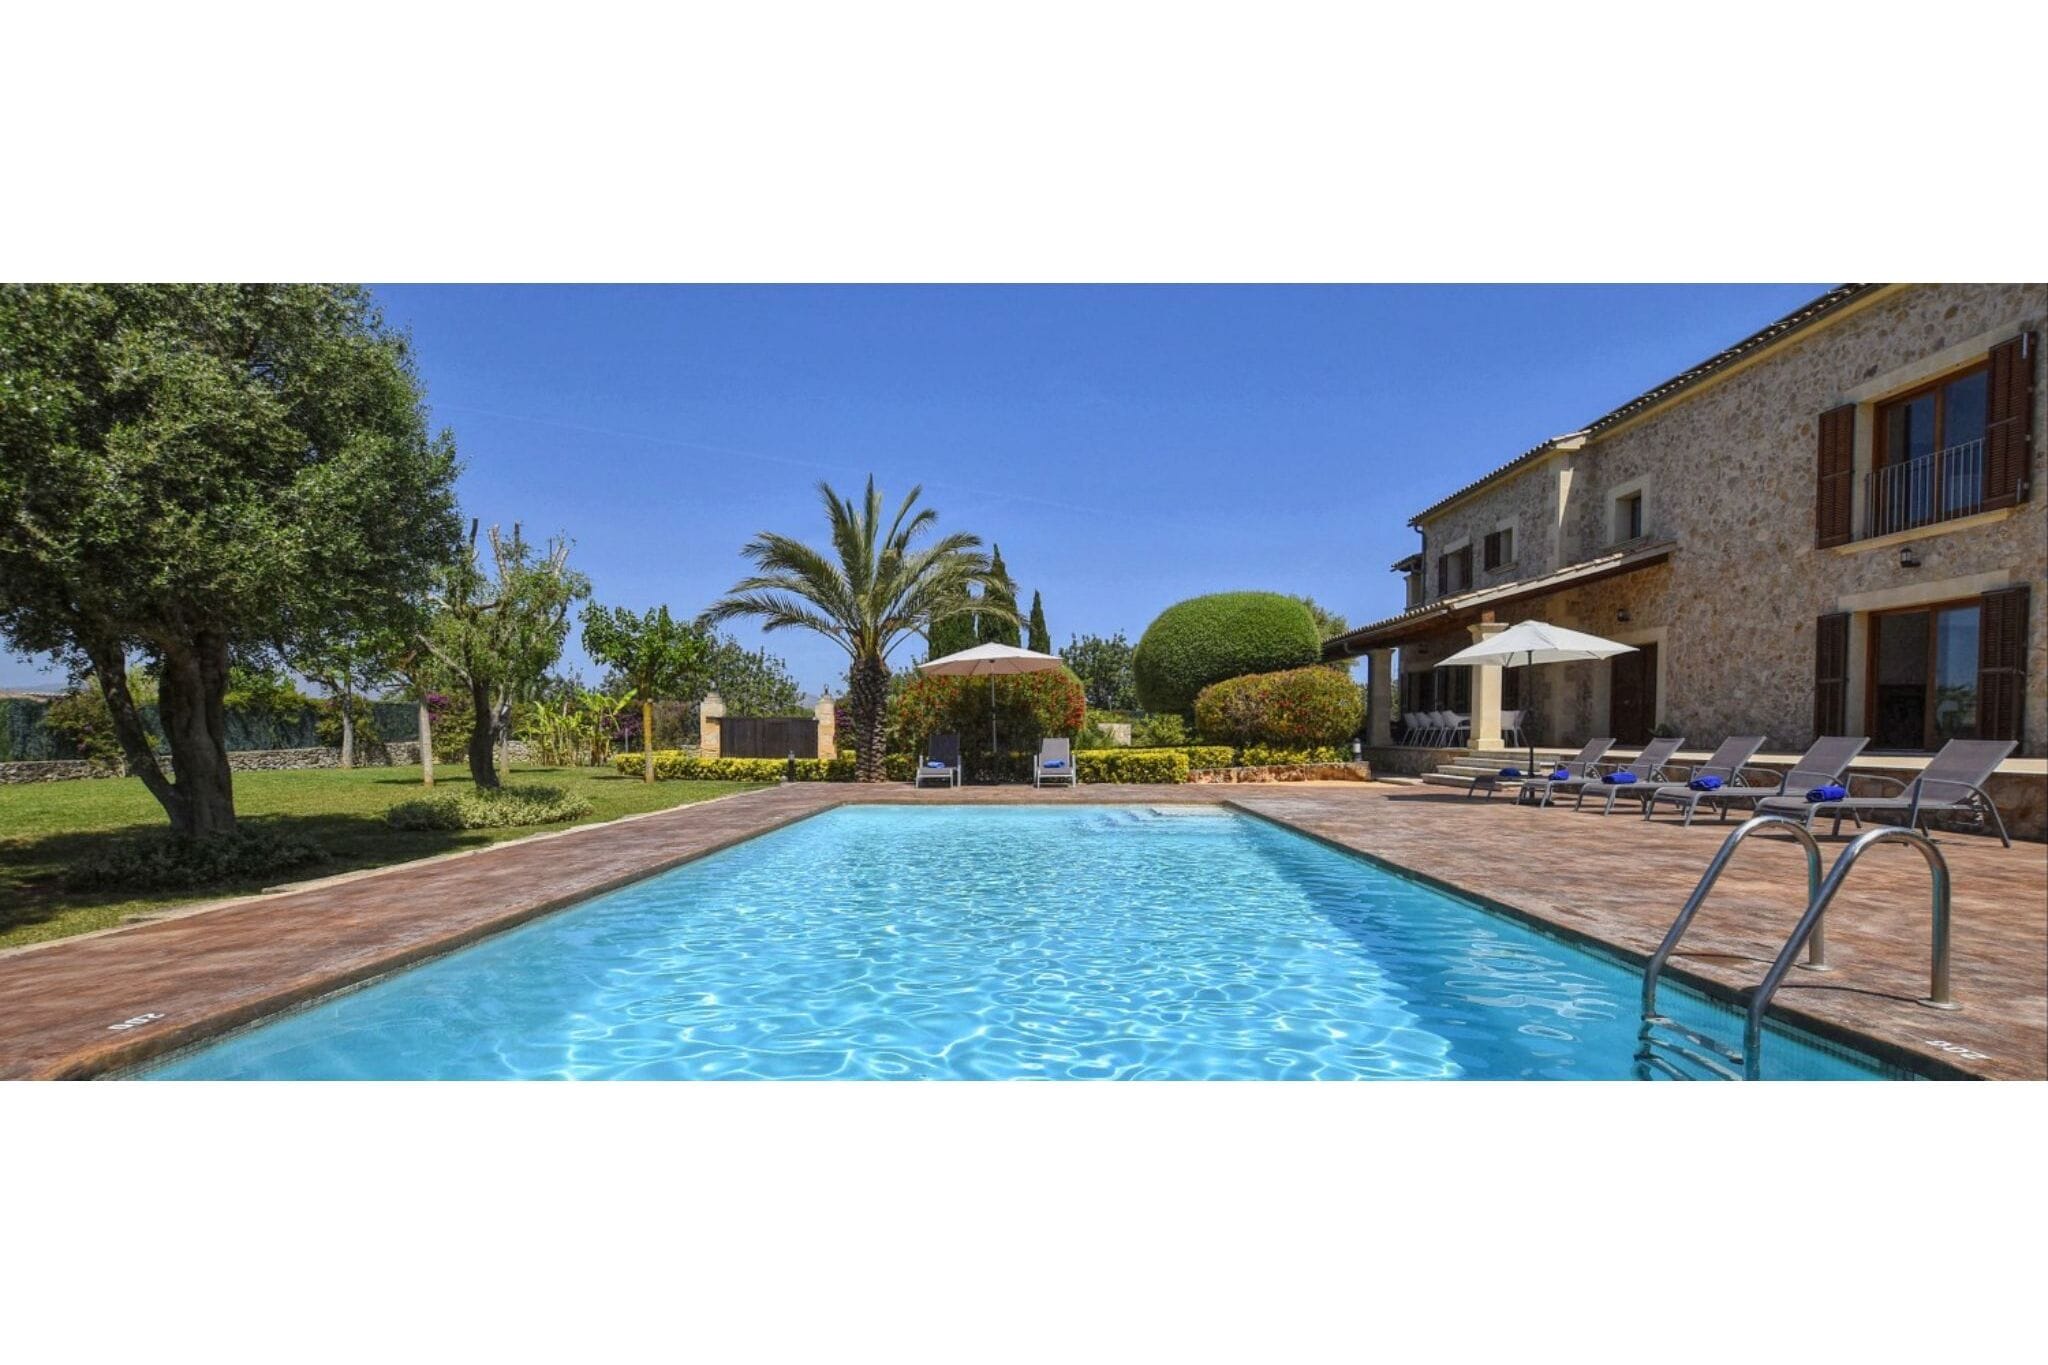 Luxe landhuis vlak bij de stad Alcudia met zwembad